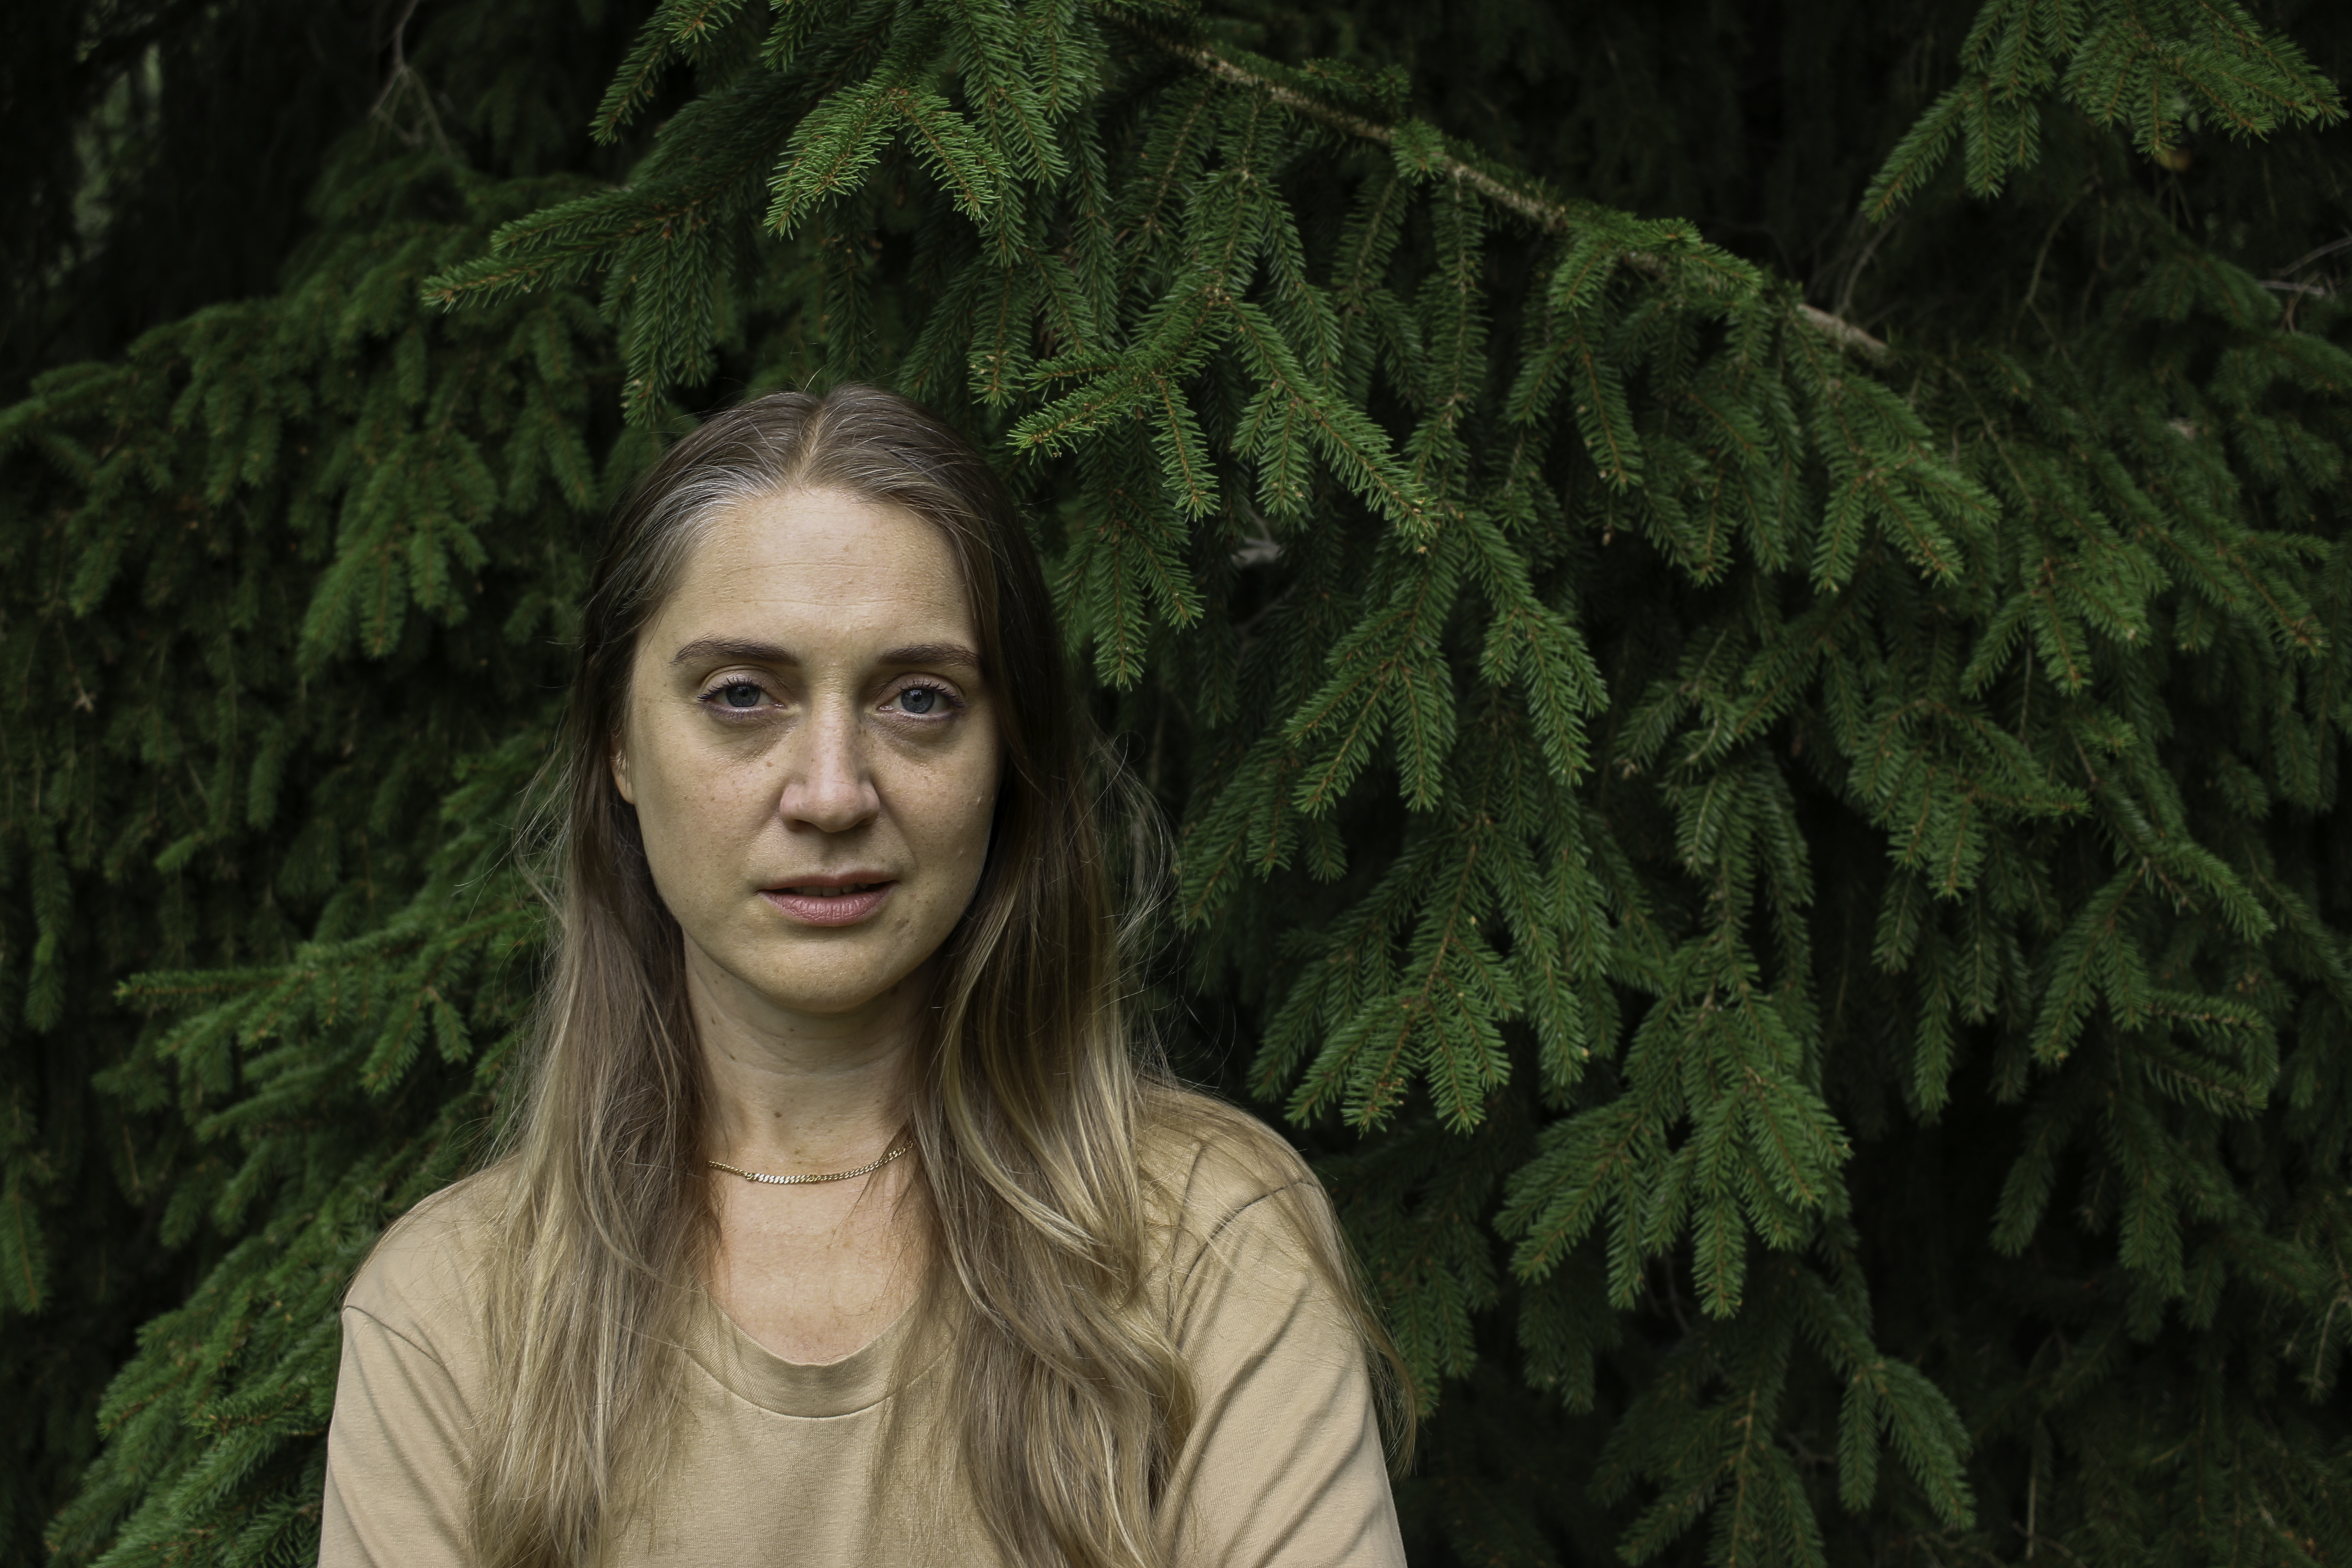 Konstnären Hanna Wildow står framför en grön barrskog. Hon har beige t-shirt och långt ljusbrunt hår.